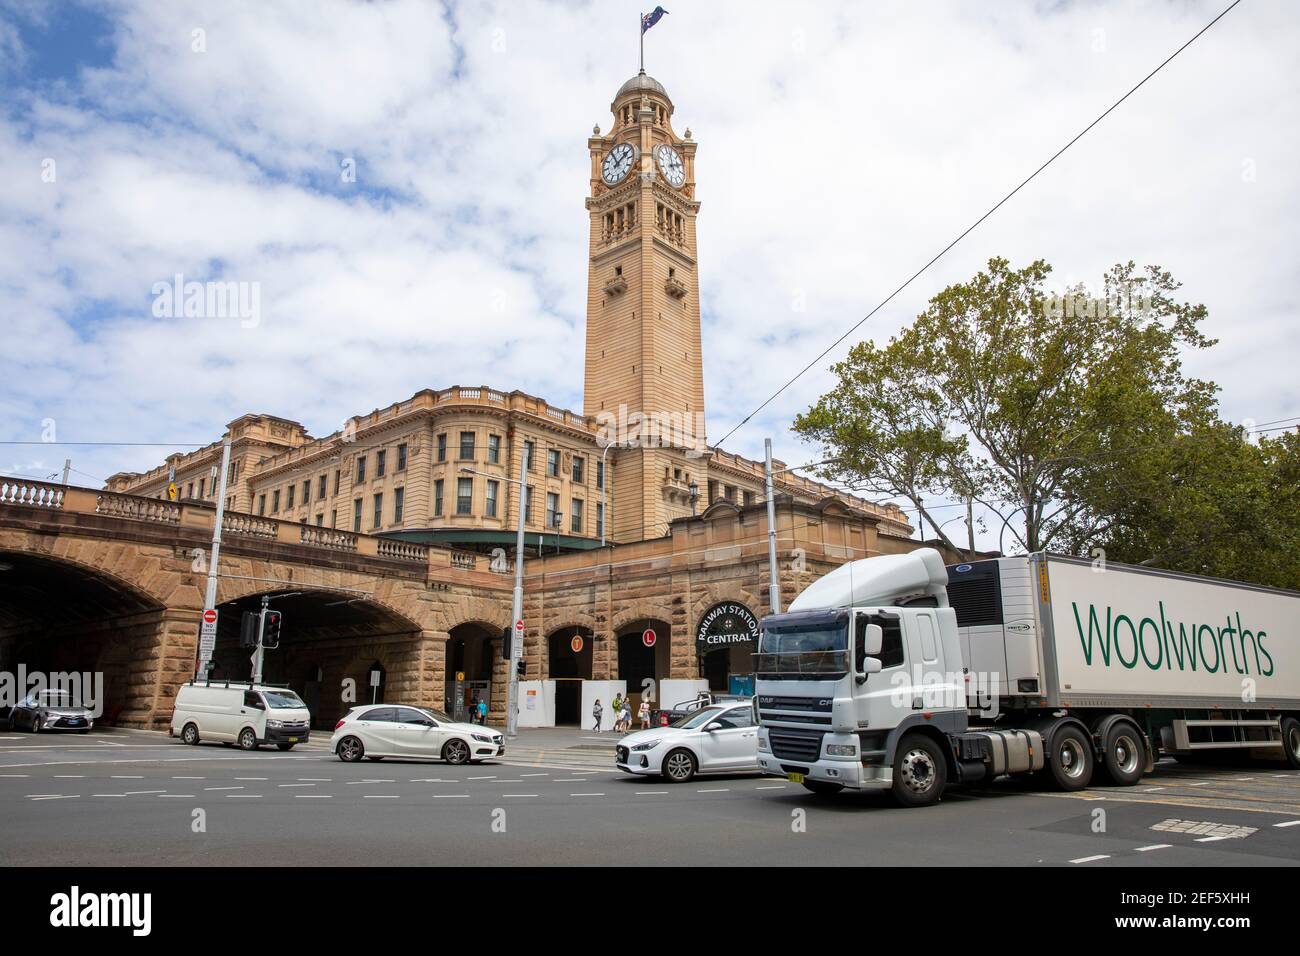 Gare centrale de Sydney, gare ferroviaire avec passage de camion de livraison de supermarché Woolworths, Sydney, Australie Banque D'Images